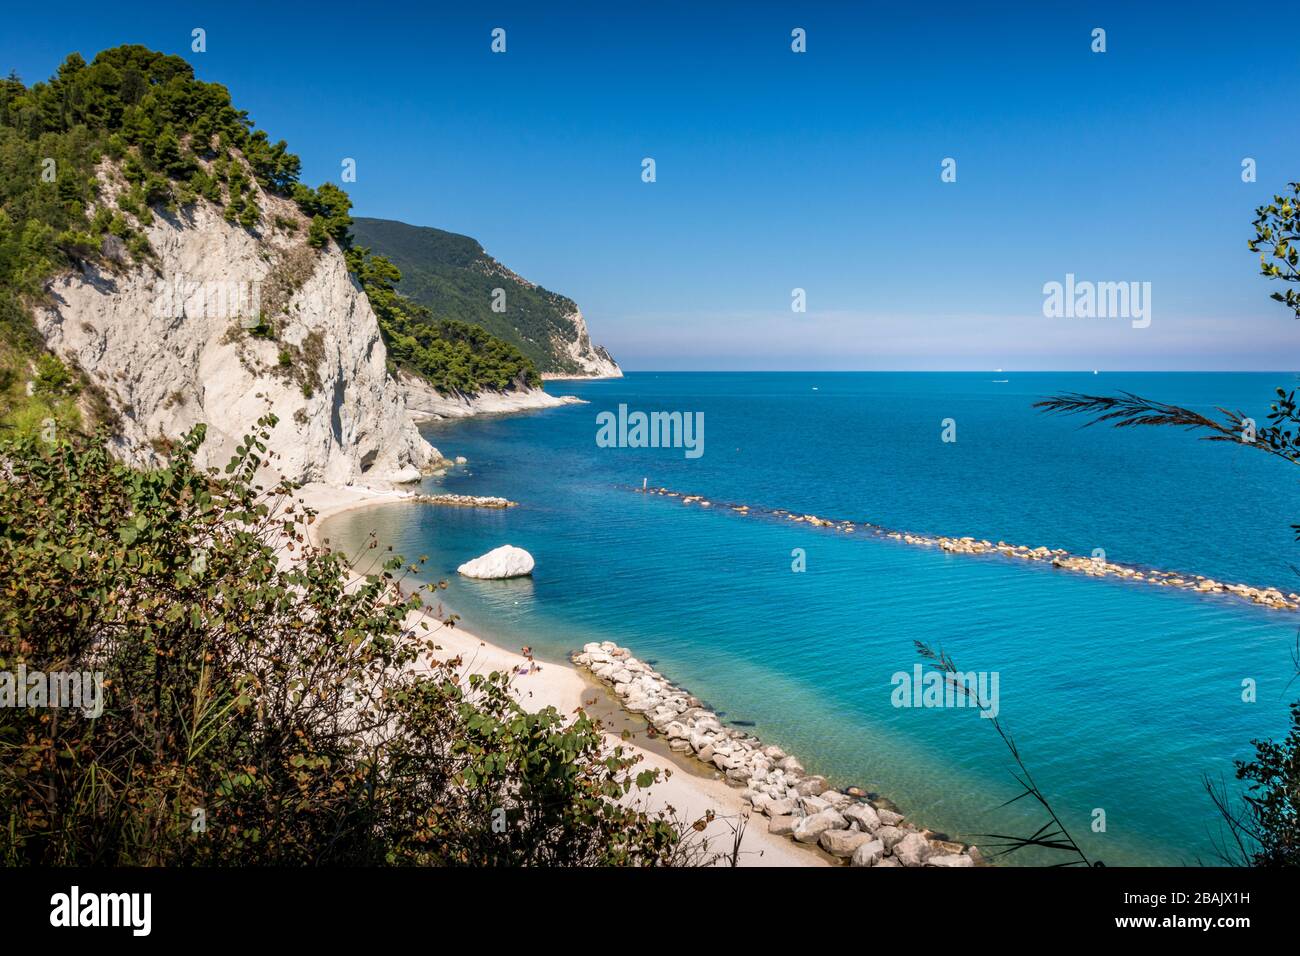 Plage de Numana Alta, sur la Riviera italienne avec les falaises blanches et l'eau bleu clair de l'adriatique lors d'une journée d'été bleu clair Banque D'Images